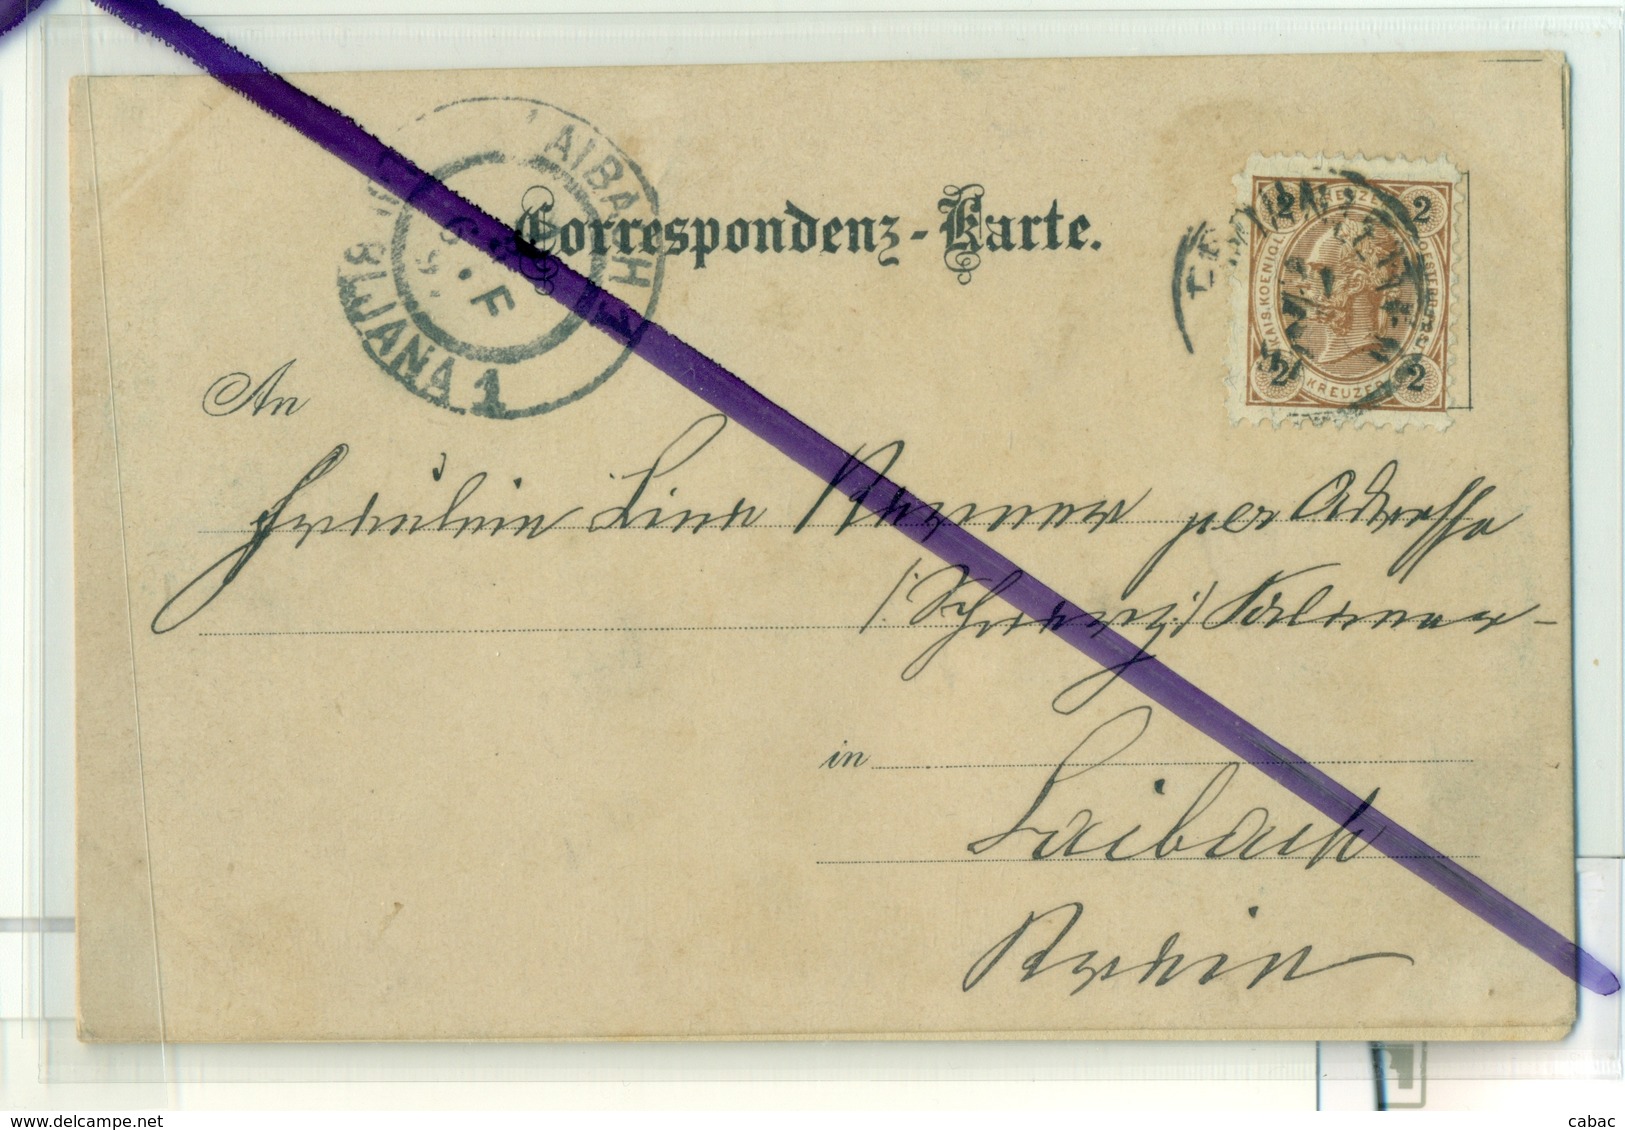 Gruss Aus Frohnleiten, Litho, 1897??, Great Condition, With Postmark And Stamp, Rabenstein Burg, Der Tabor - Frohnleiten